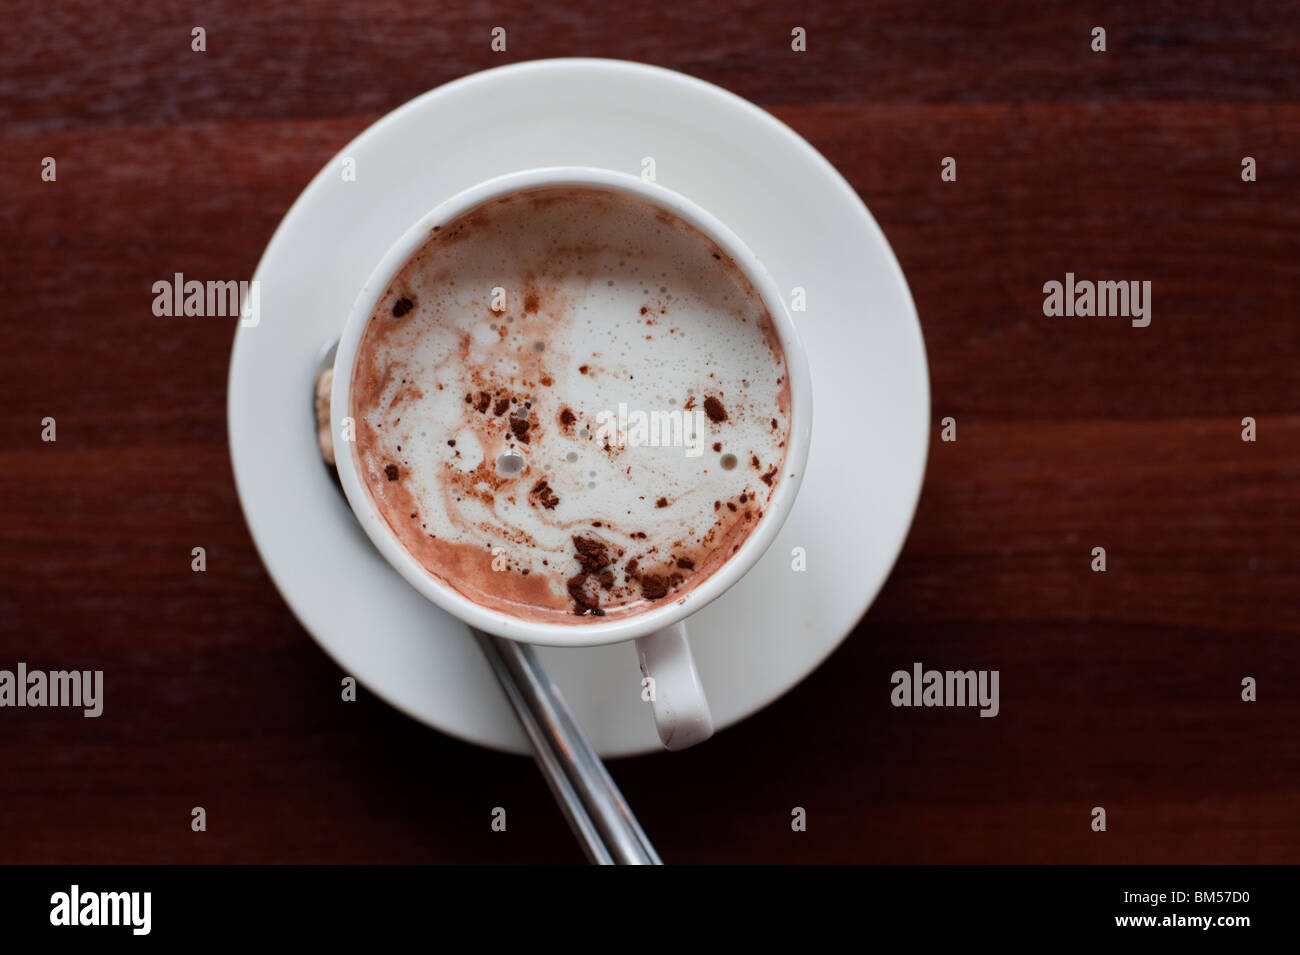 Chocolate caliente en una taza blanca, visto desde arriba Foto de stock